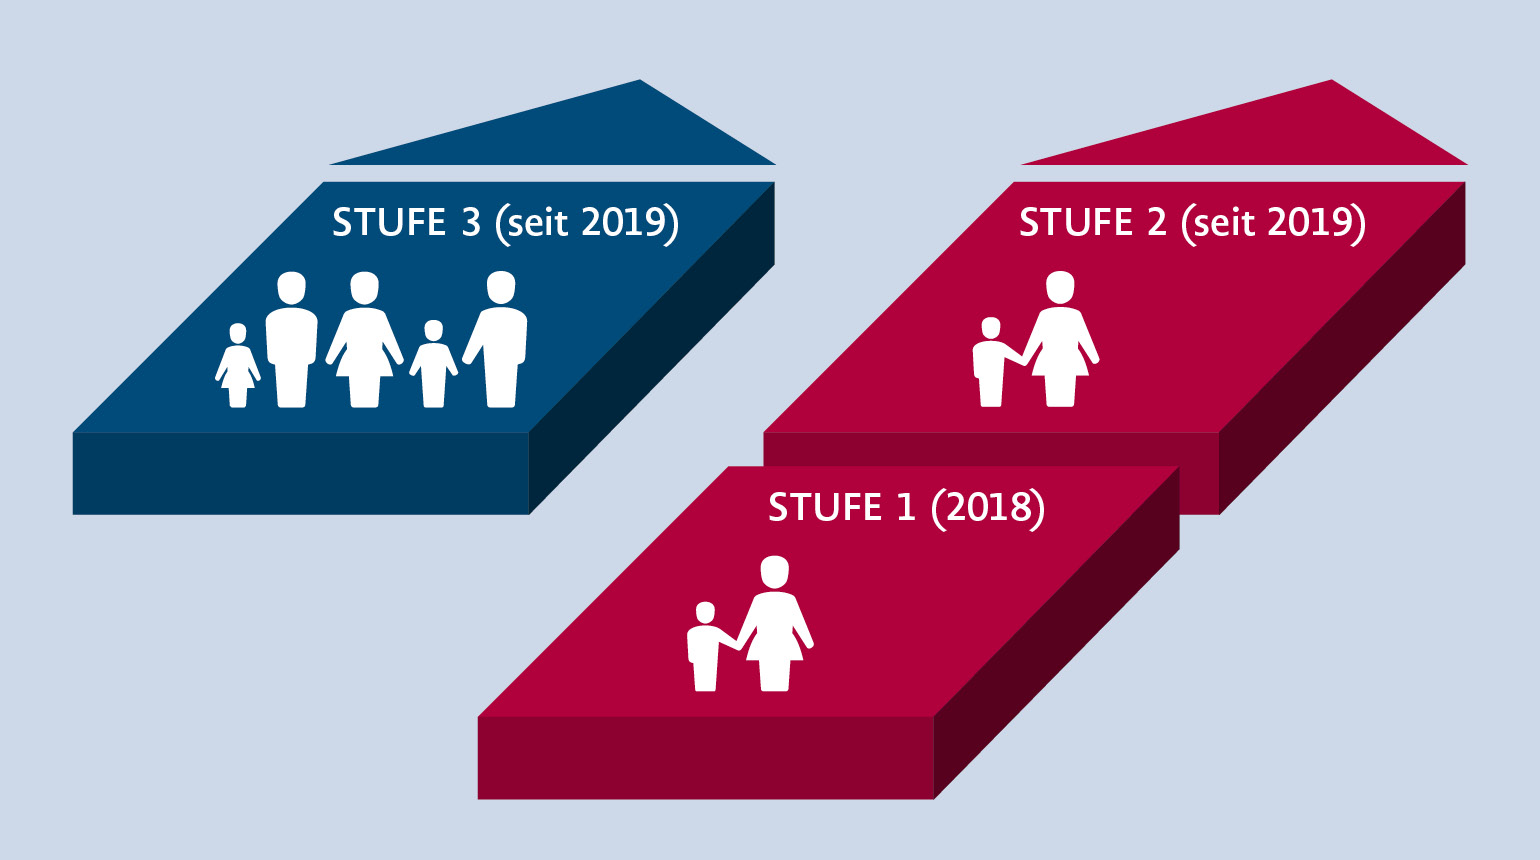  Grafische Darstellung des 3-Stufen-Plans. Sie zeigt, dass Stufe 1 (Maßnahmen im Jahr 2018) und Stufe 2 (Maßnahme ab 2019) aufeinander aufbauen. Stufe 3 wird separat dargestellt.